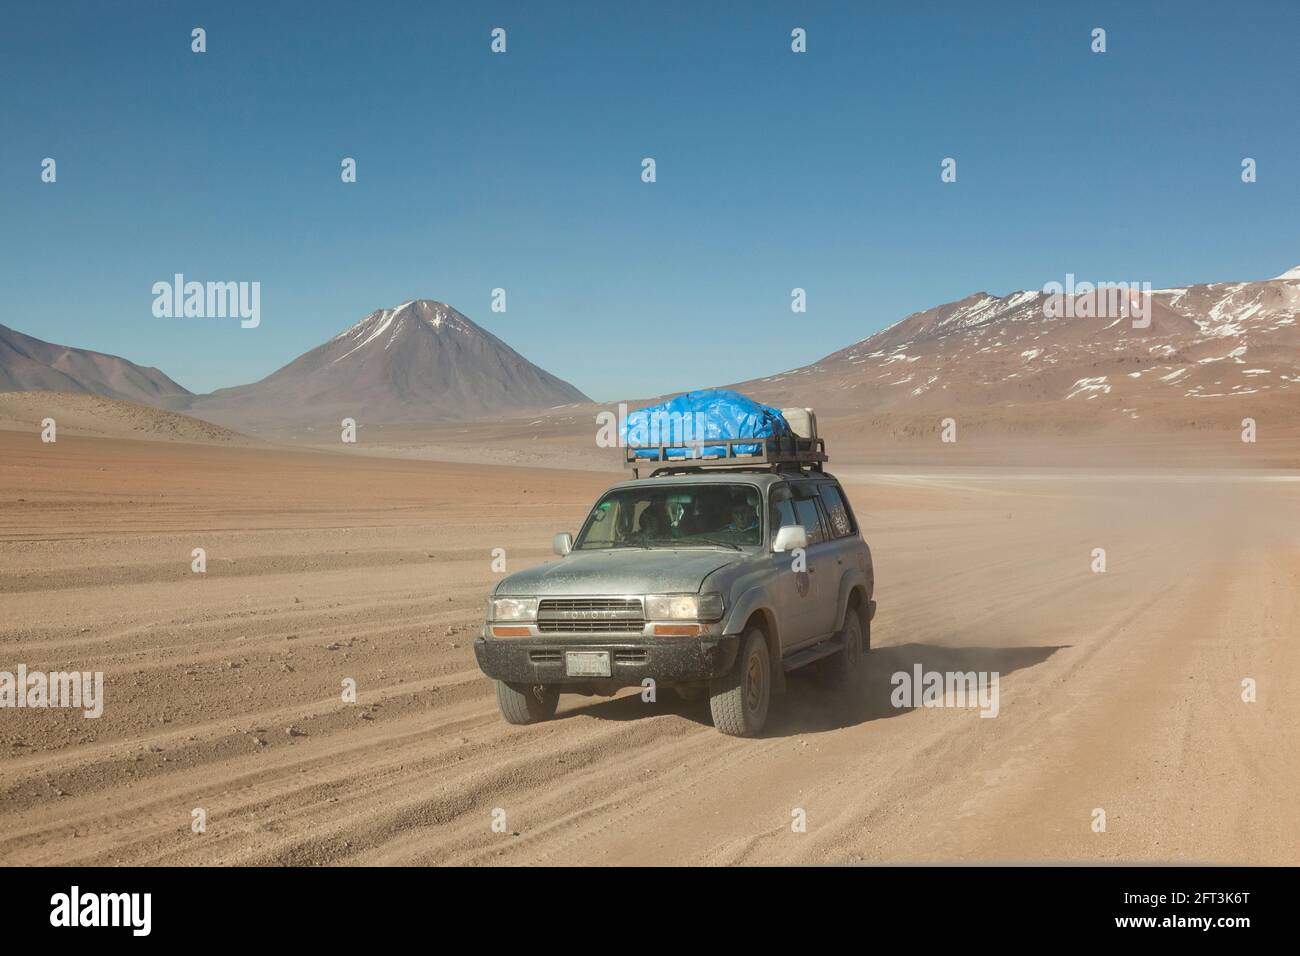 Sullo sfondo di vulcani, un veicolo fuoristrada 4x4 attraversa il paesaggio desertico della Bolivia in un safari turistico terrestre. Foto Stock